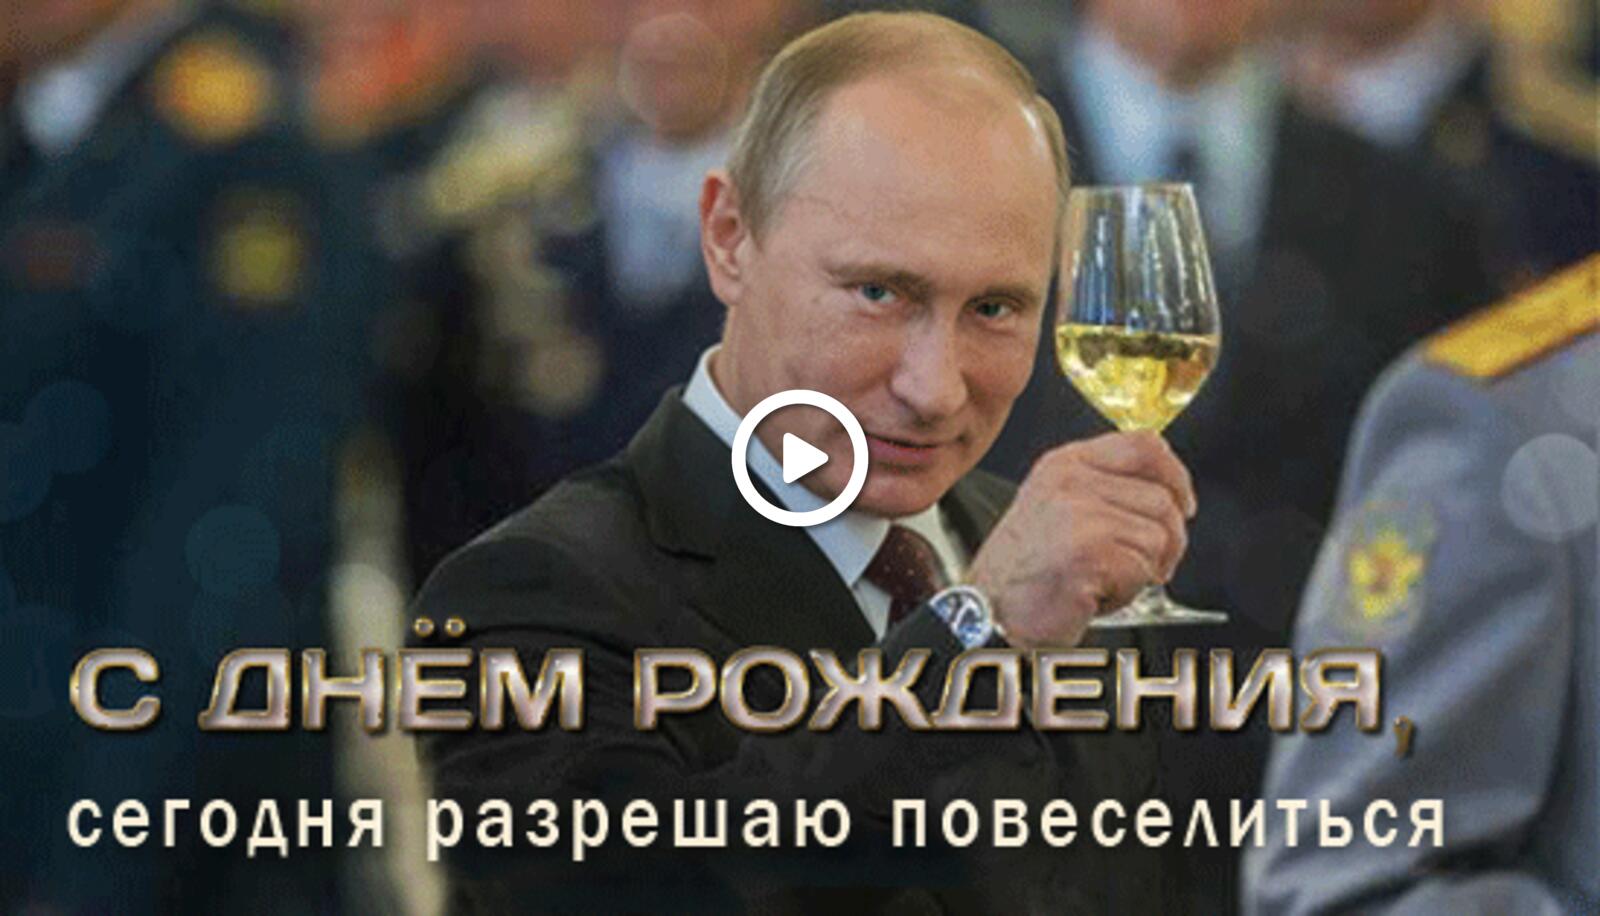 Поздравления с днем ирине путиным. С днё рождения от Путина. С днём рождения отпуттна. С жнем рлждения ТТ Путина.